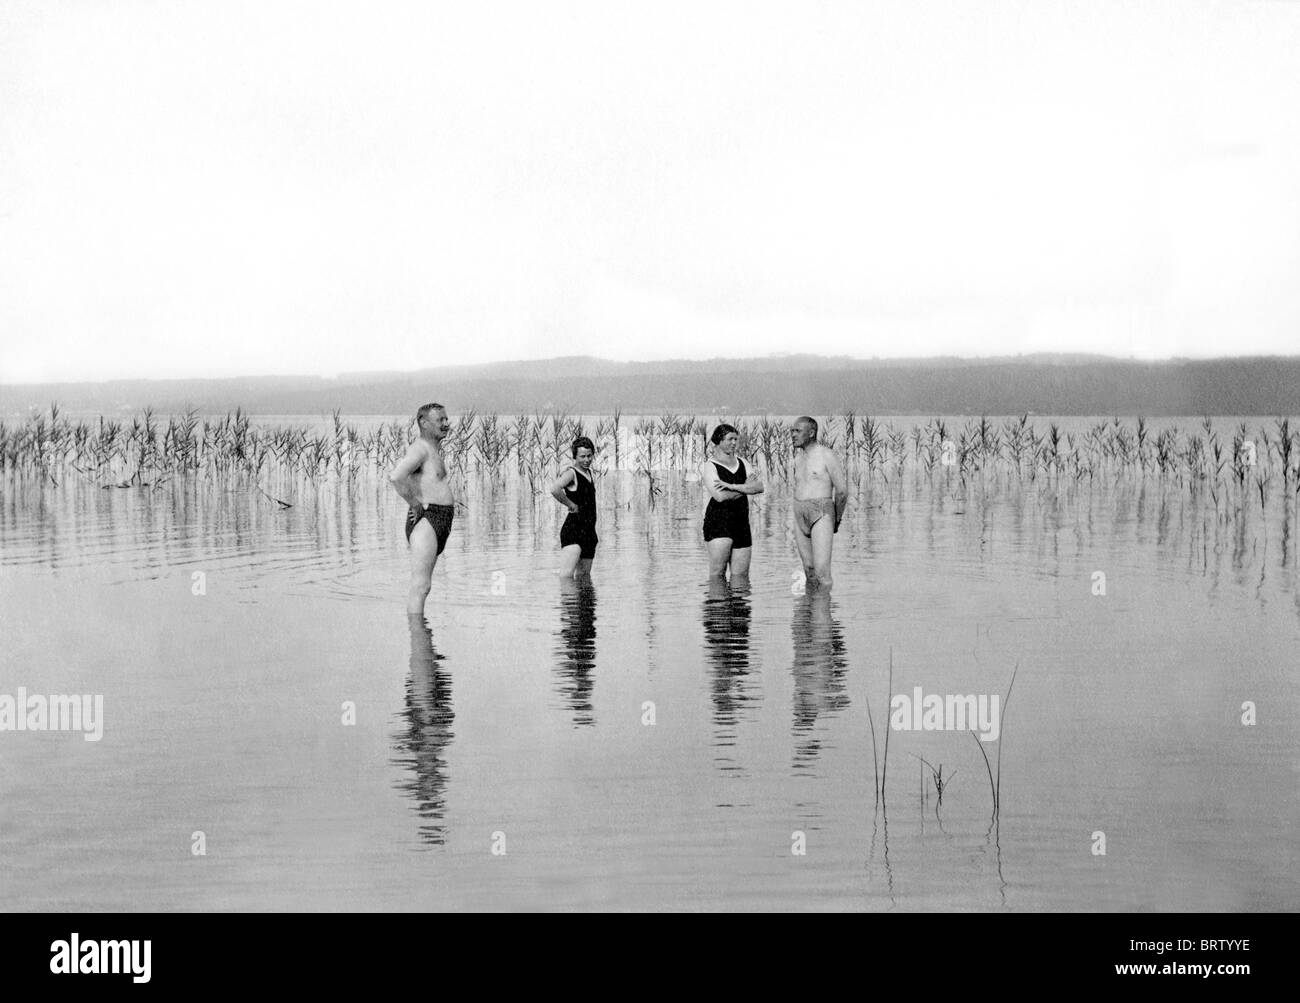 Bañarse en un lago, imagen histórica, ca. 1910 Foto de stock